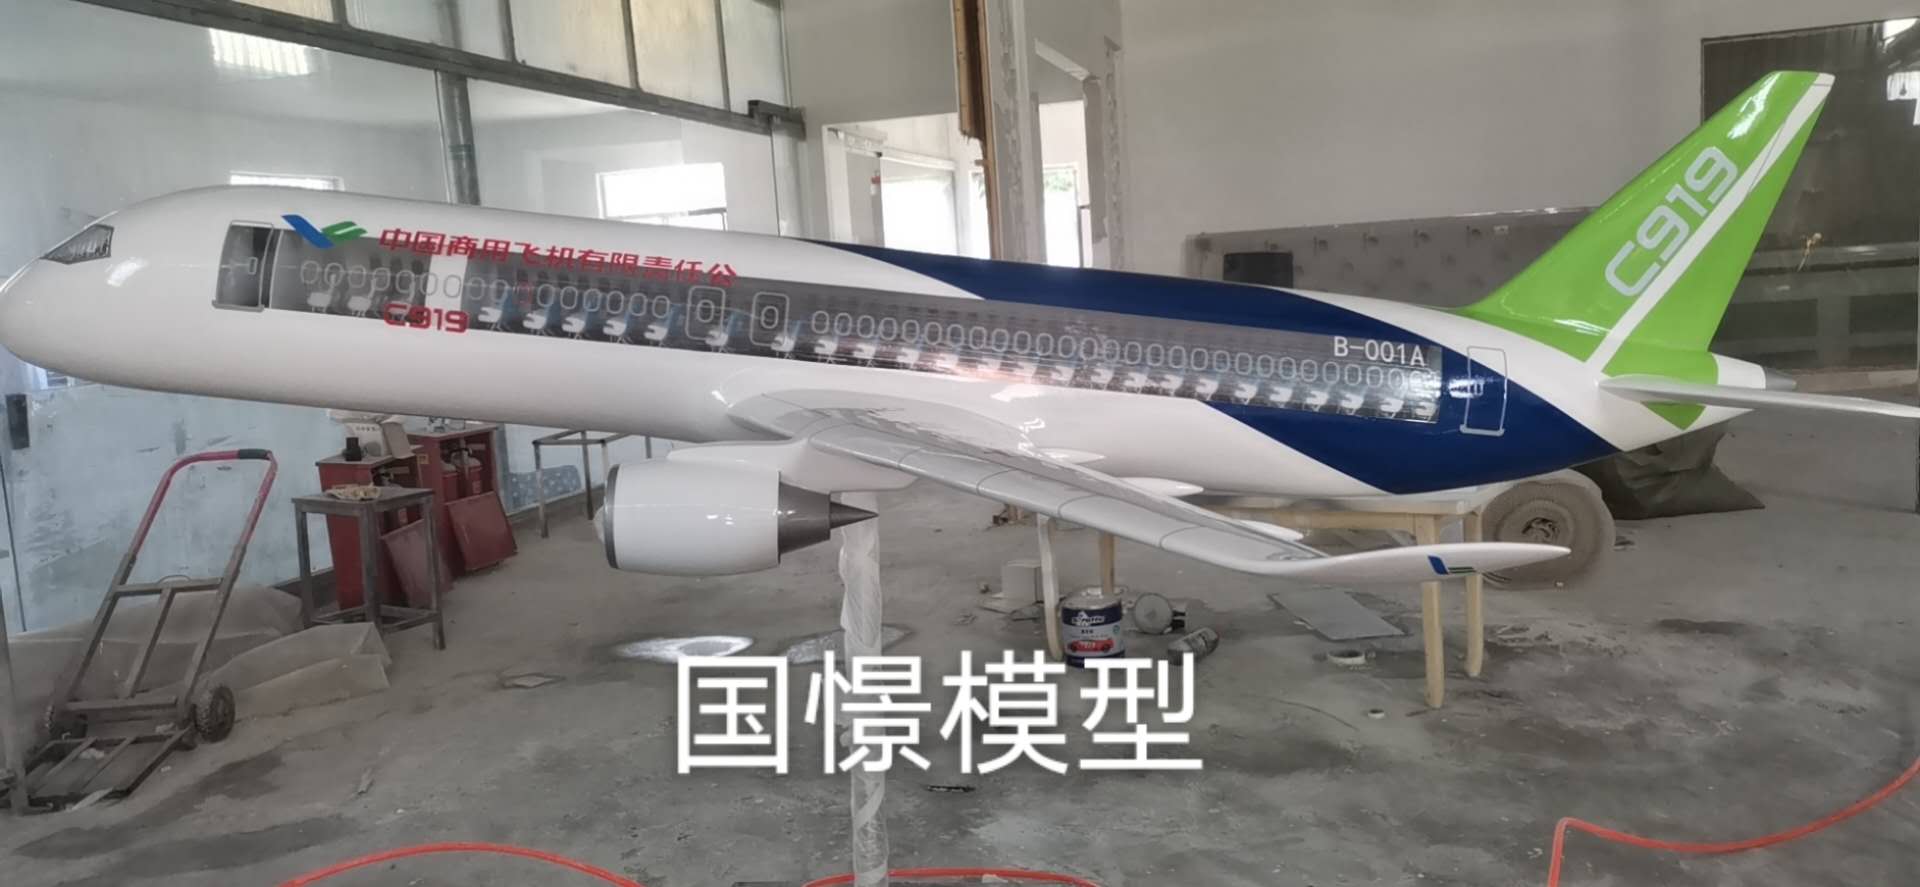 洛南县飞机模型